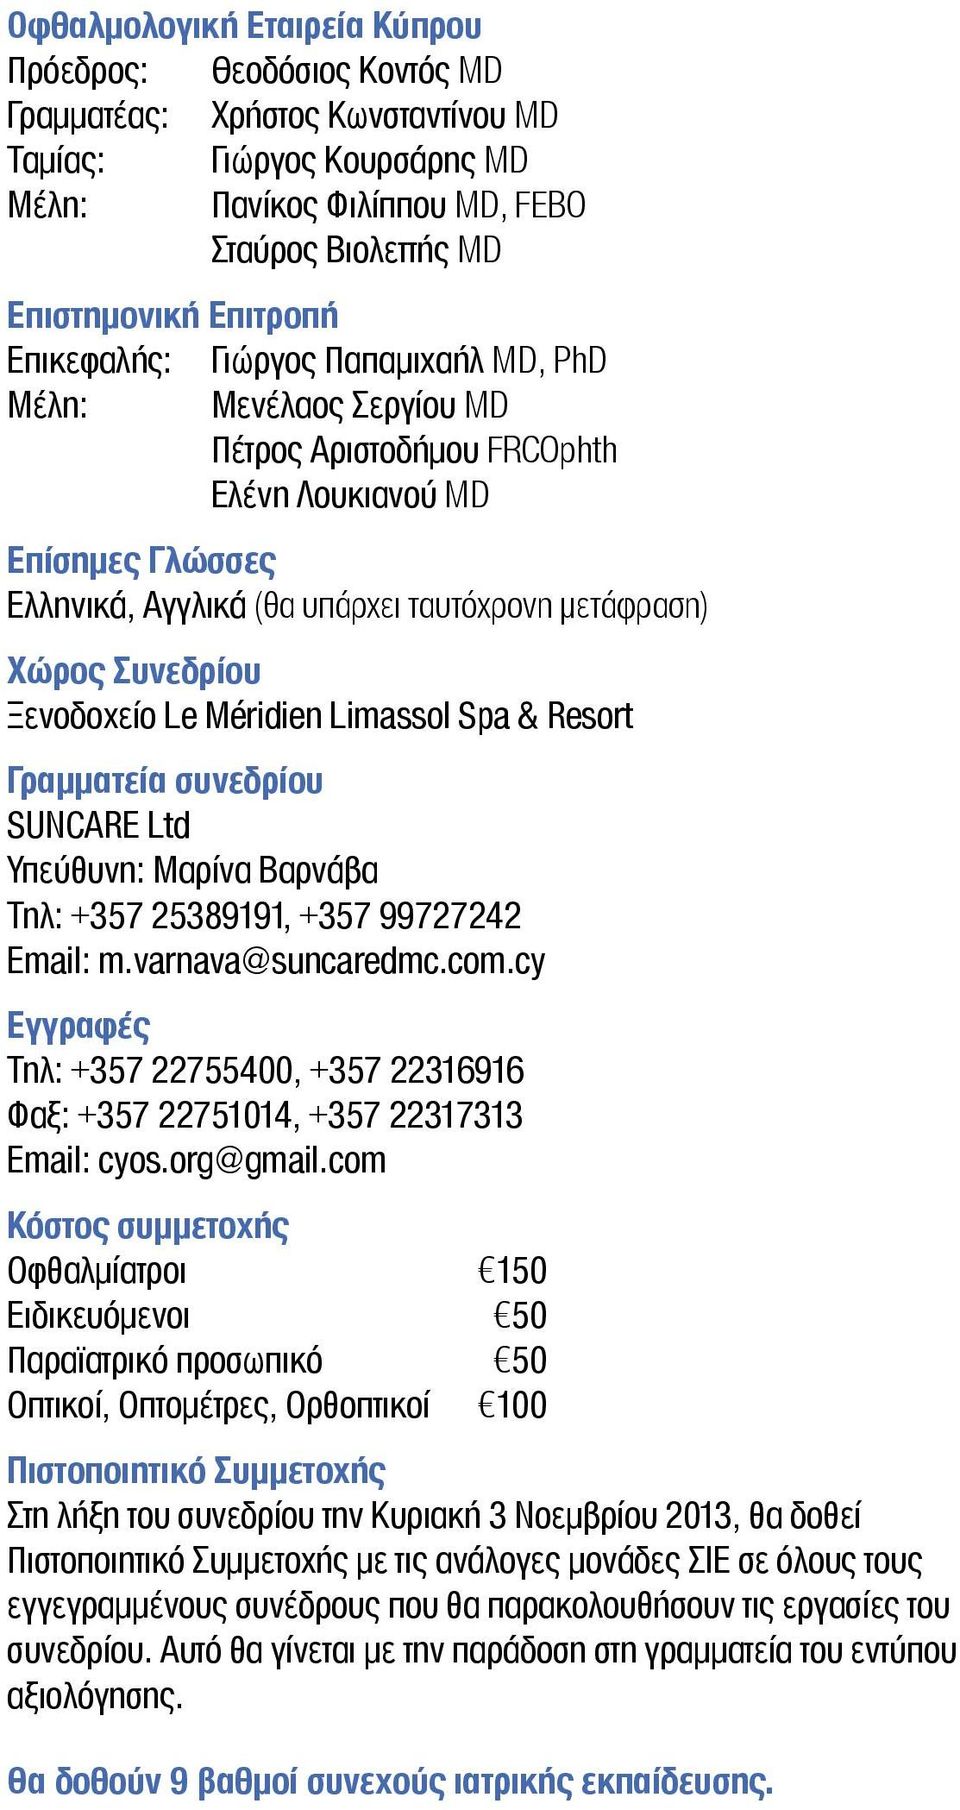 Ξενοδοχείο Le Méridien Limassol Spa & Resort Γραμματεία συνεδρίου SUNCARE Ltd Υπεύθυνη: Μαρίνα Βαρνάβα Τηλ: +357 25389191, +357 99727242 Email: m.varnava@suncaredmc.com.